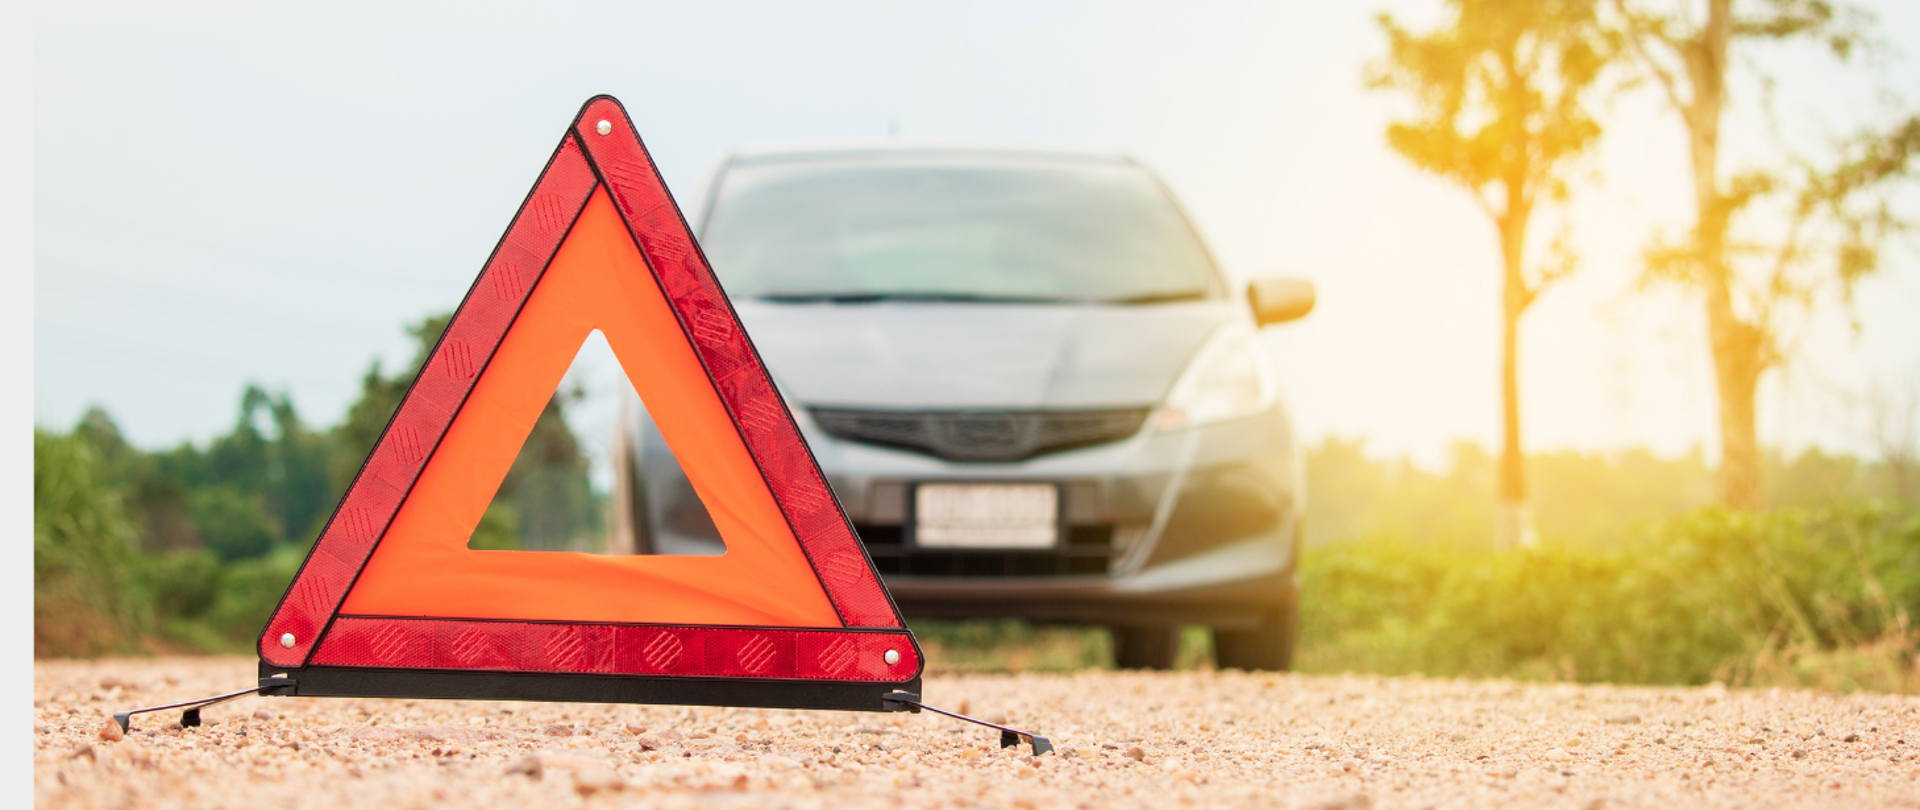 Zdjęcie trójkąta ostrzegawczego leżącego na jezdni w tle samochód osobowy